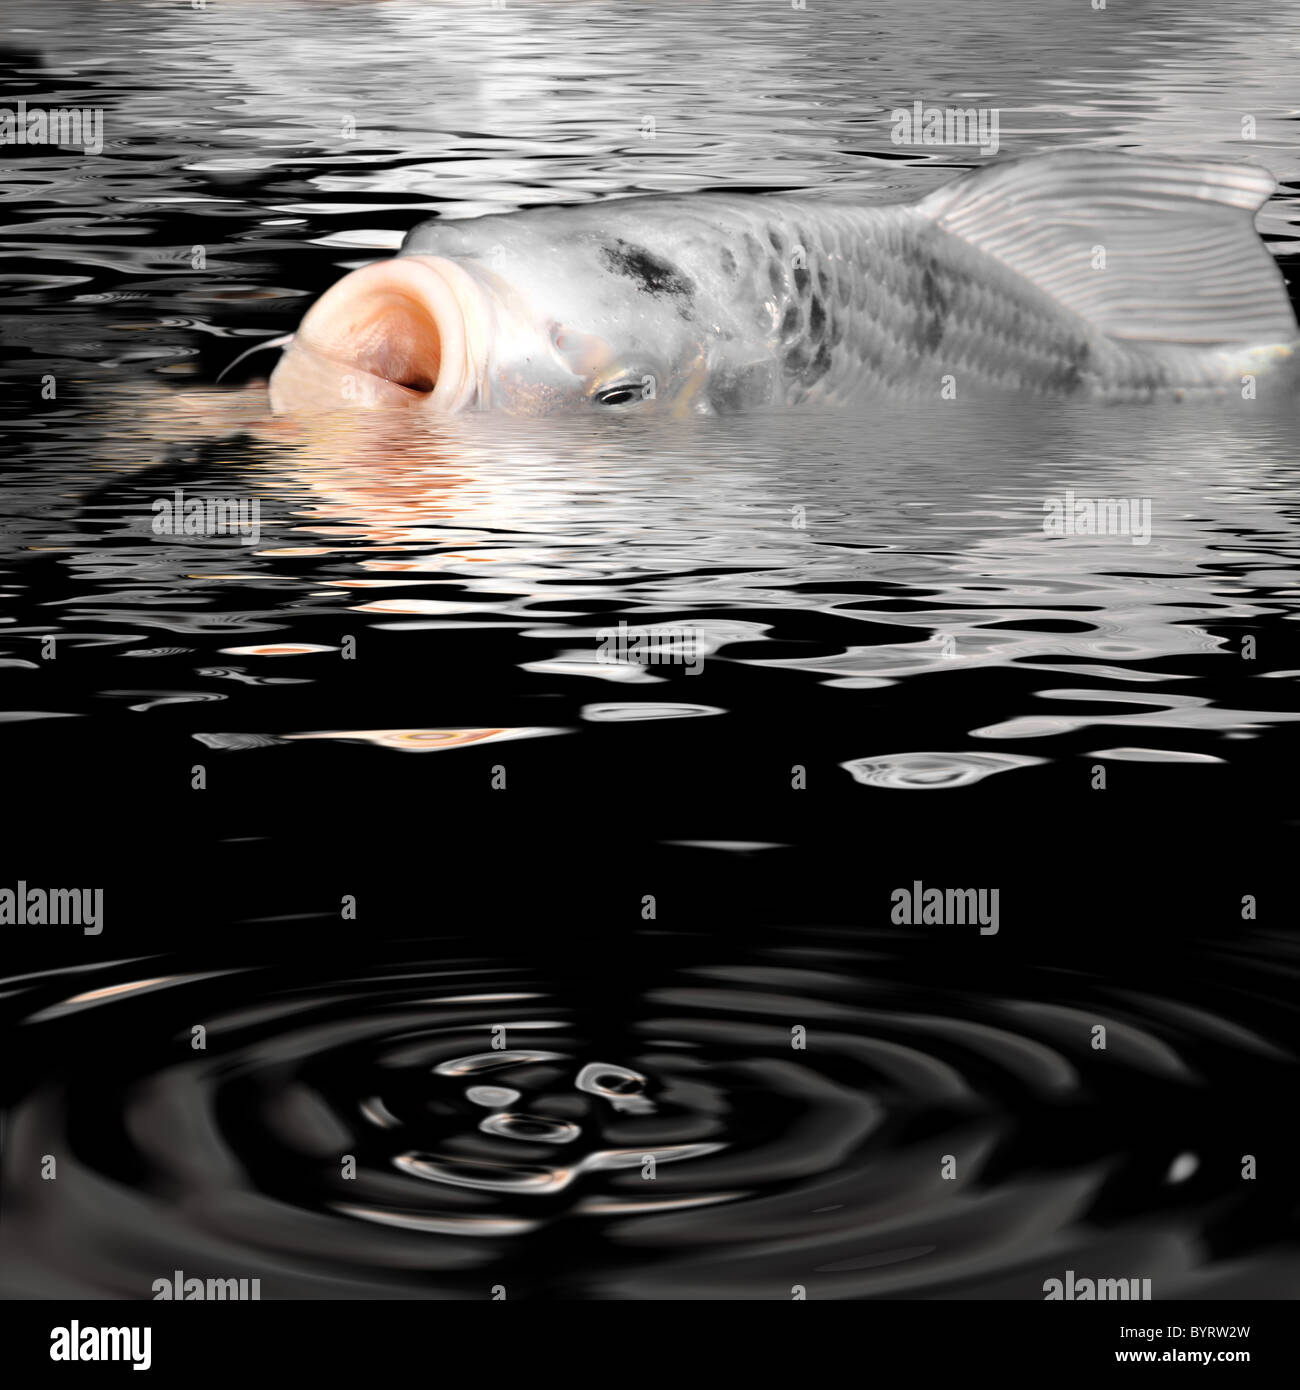 Weiße Koi Karpfen (Cyprinus), Mund offen an der Oberfläche des Wassers, Digitaleffekt für Wasser Stockfoto